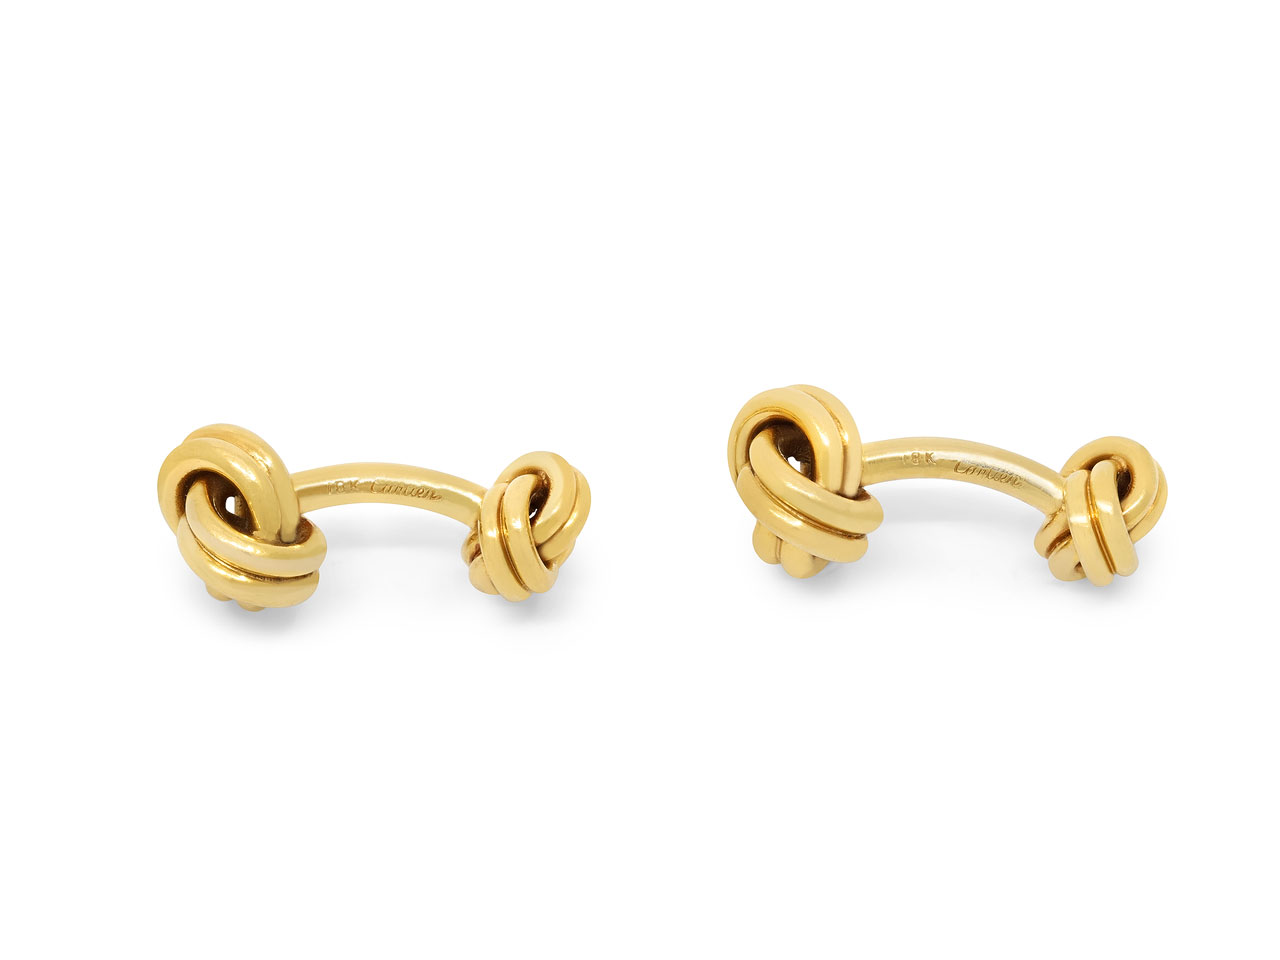 Cartier Knot Cufflinks in 18K Gold